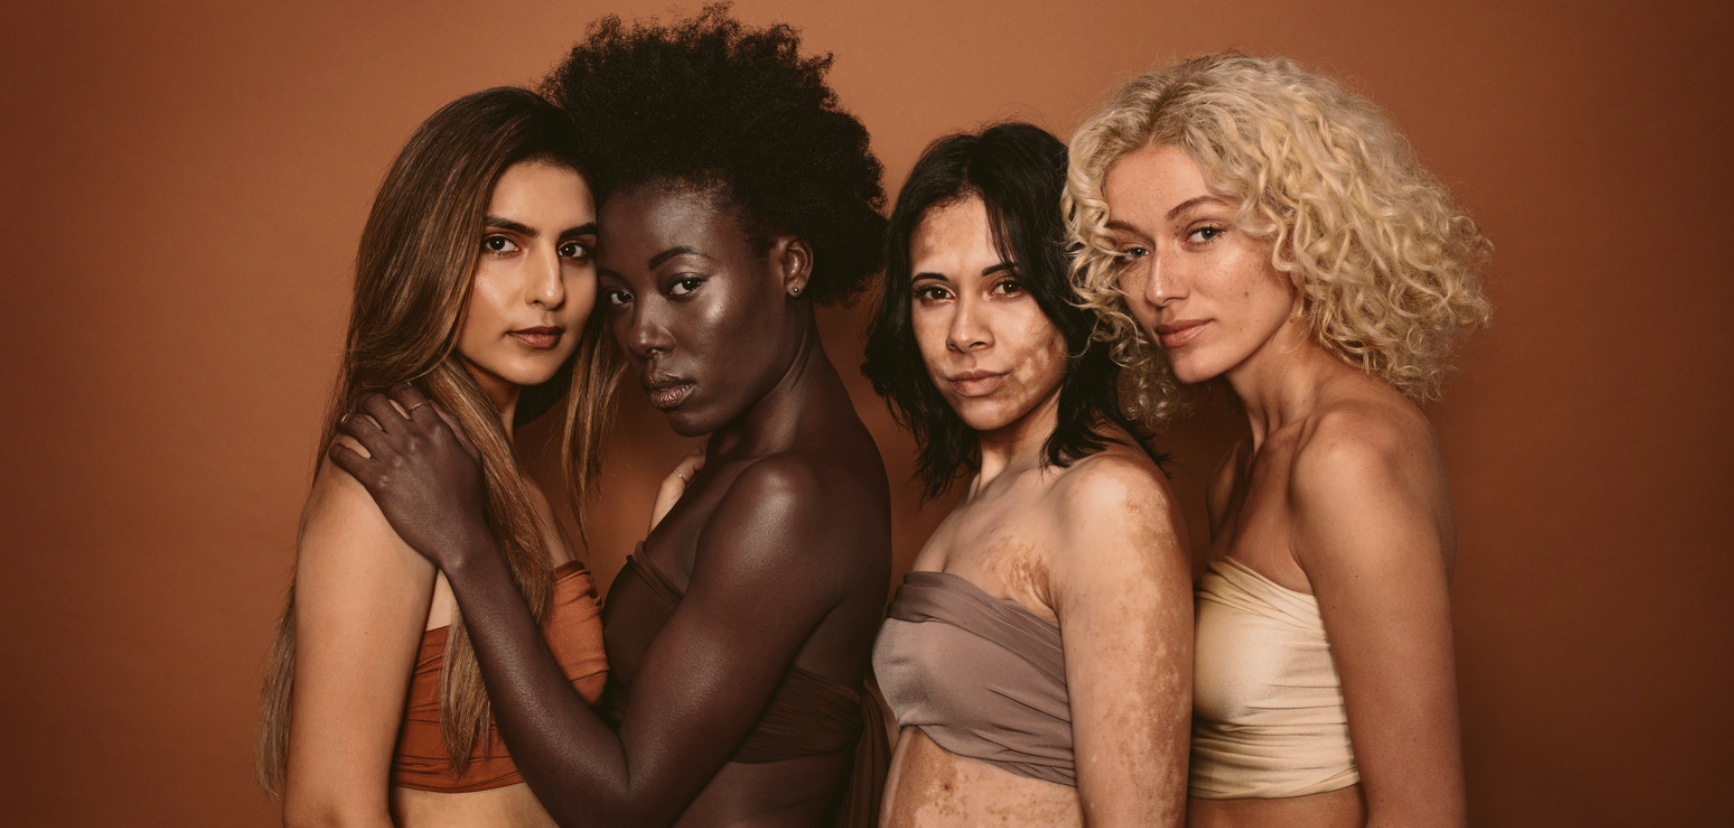 brazilian butt lift (4 beautiful diverse women of color)